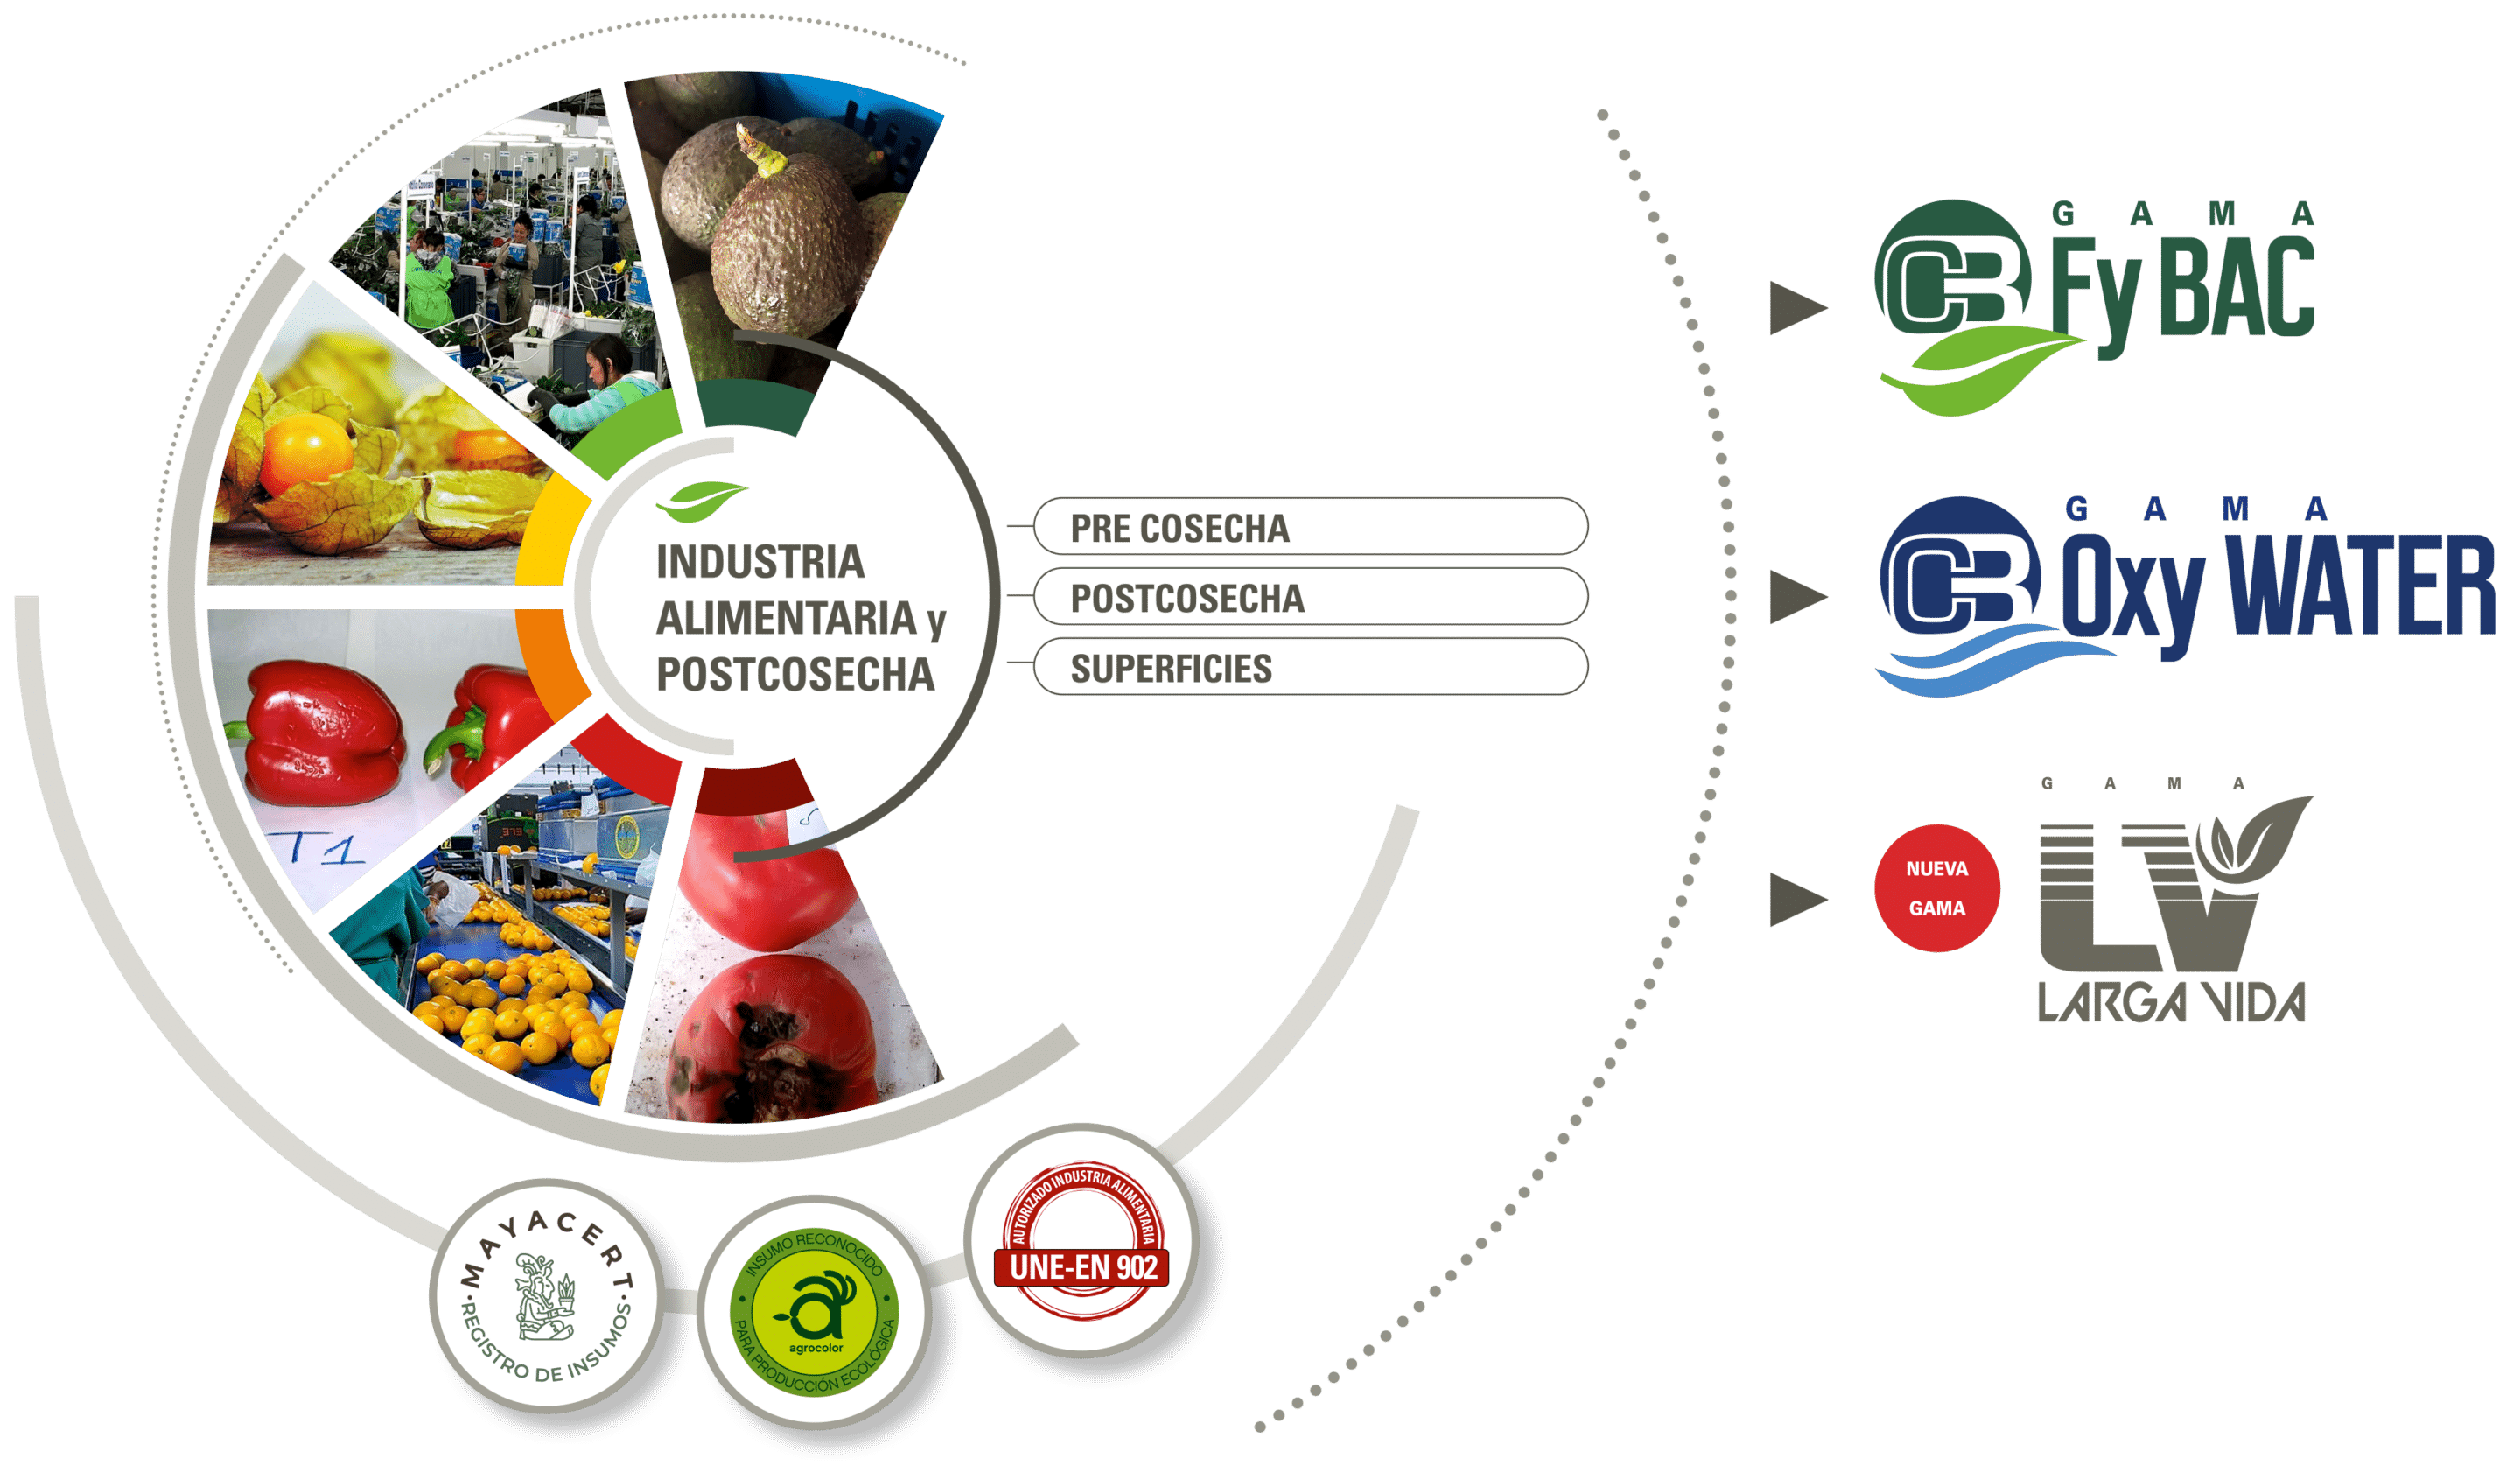 Industria alimentaria y Postcosecha: sellos de calidad